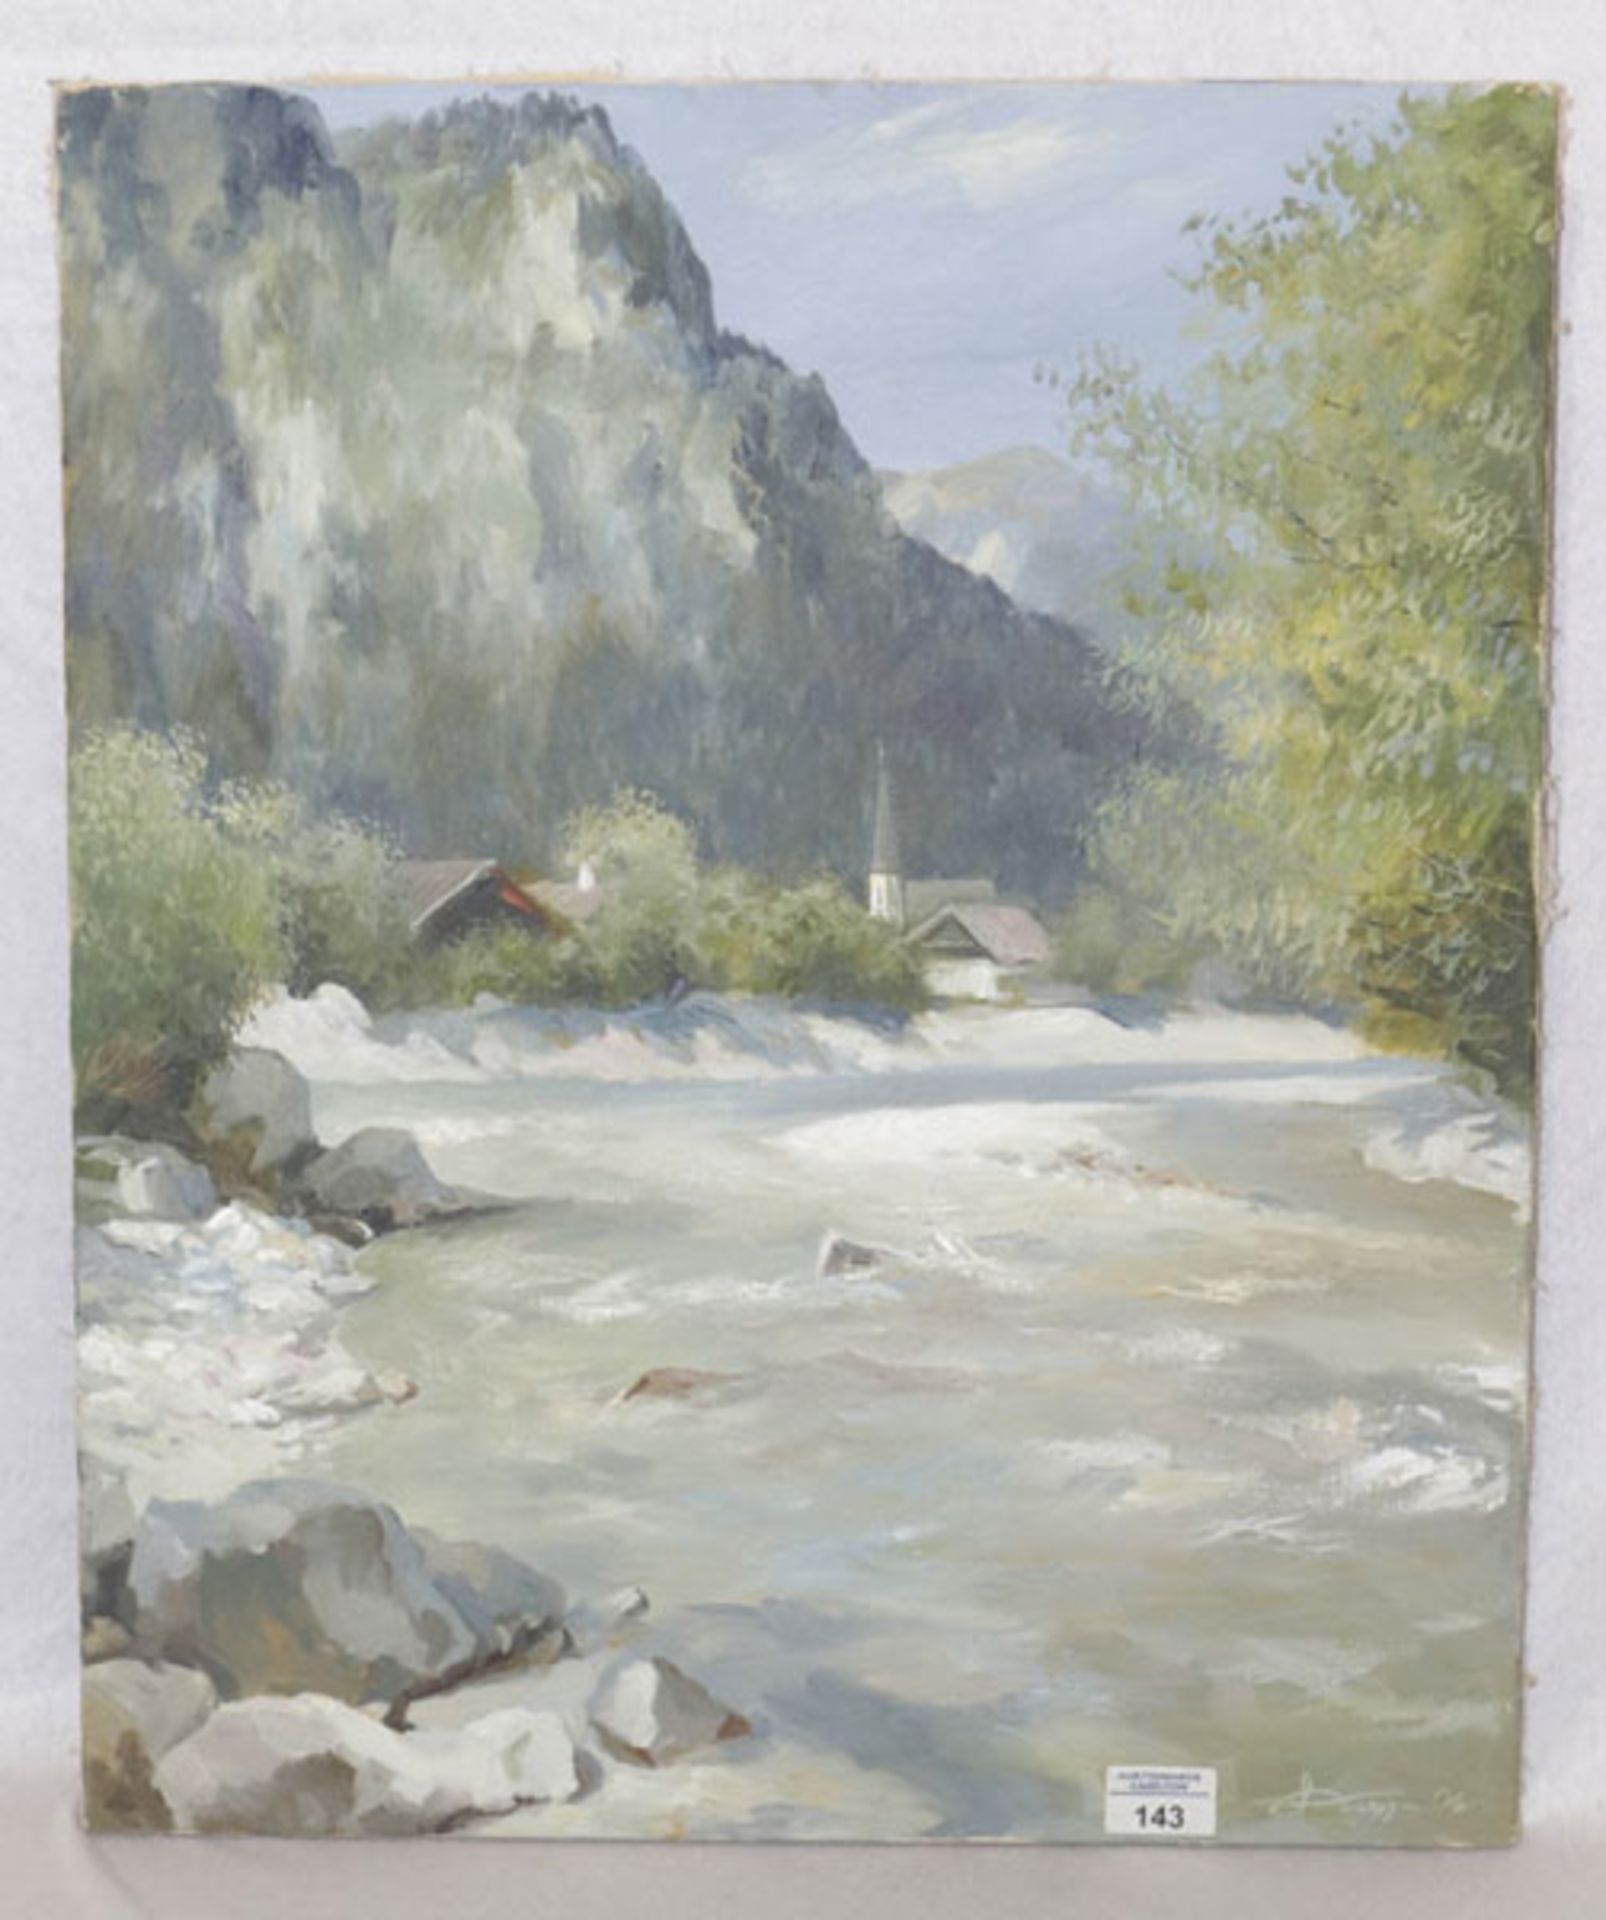 Gemälde Ö/LW 'Loisach bei Garmisch', undeutlich signiert, ohne Rahmen 60 cm x 49,5 cm